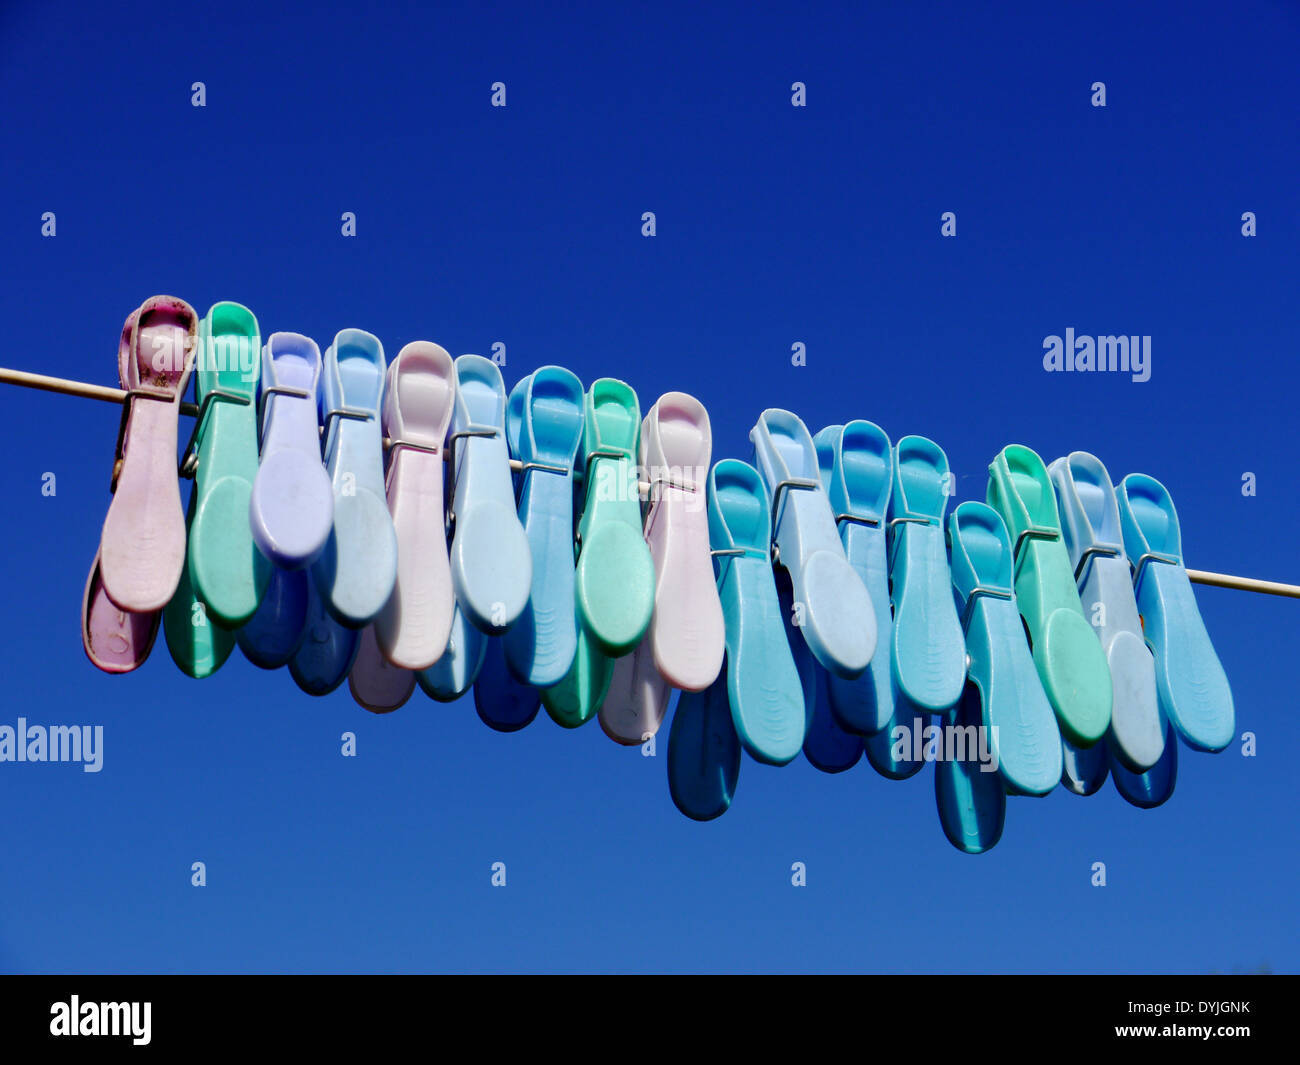 Immagine astratta che mostra in plastica colorata mollette su una linea di lavaggio, contro il luminoso cielo blu Foto Stock